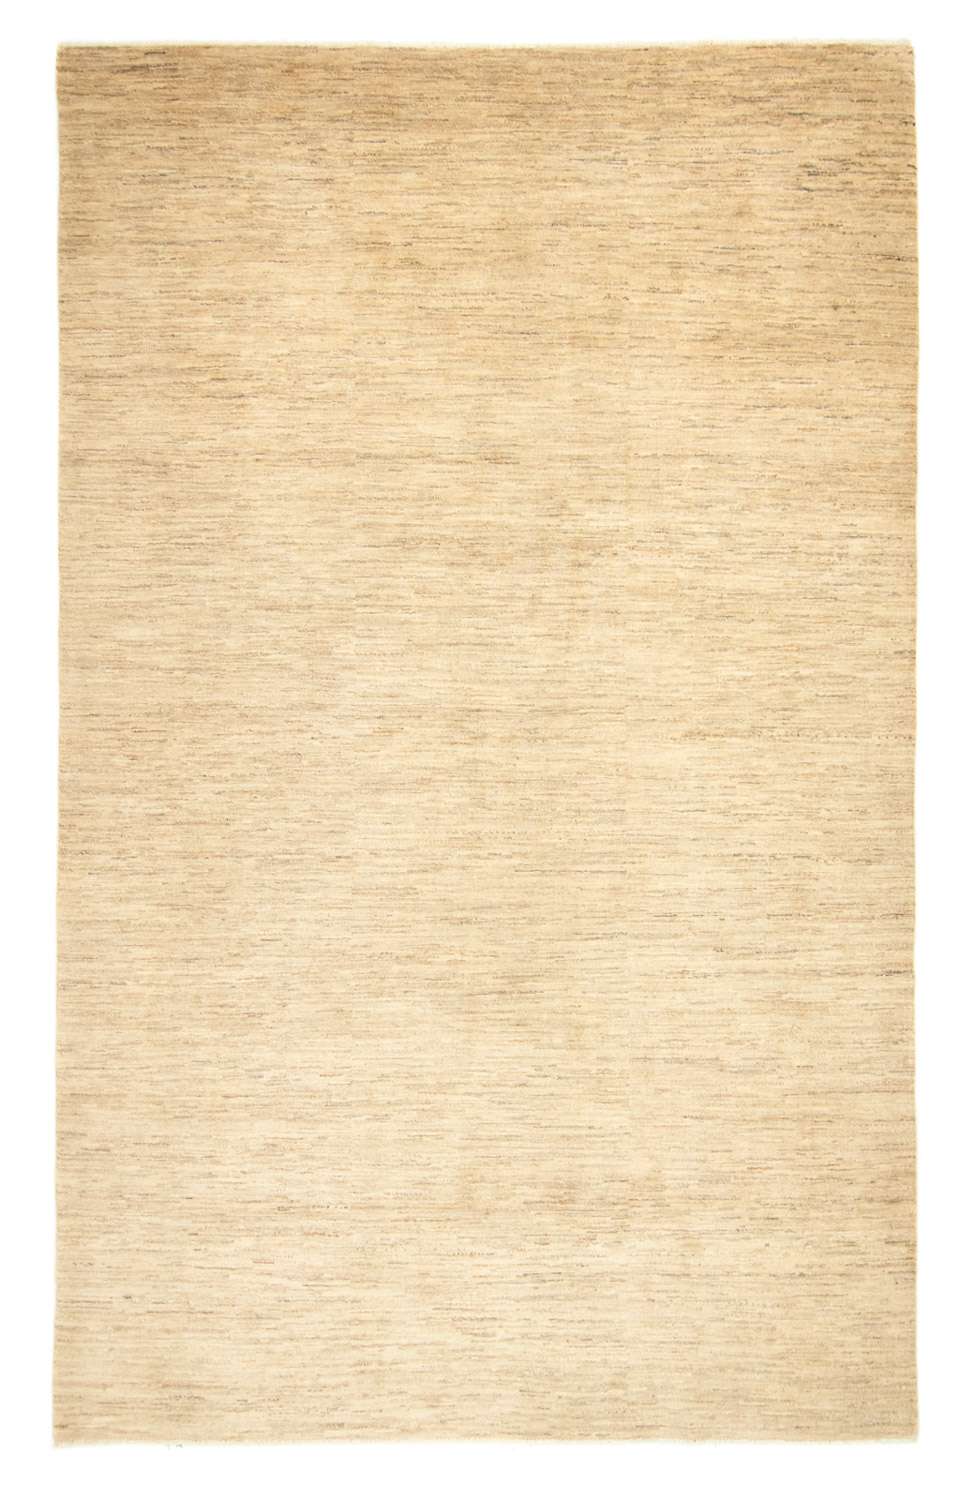 Gabbeh Rug - Indus - 305 x 191 cm - beige